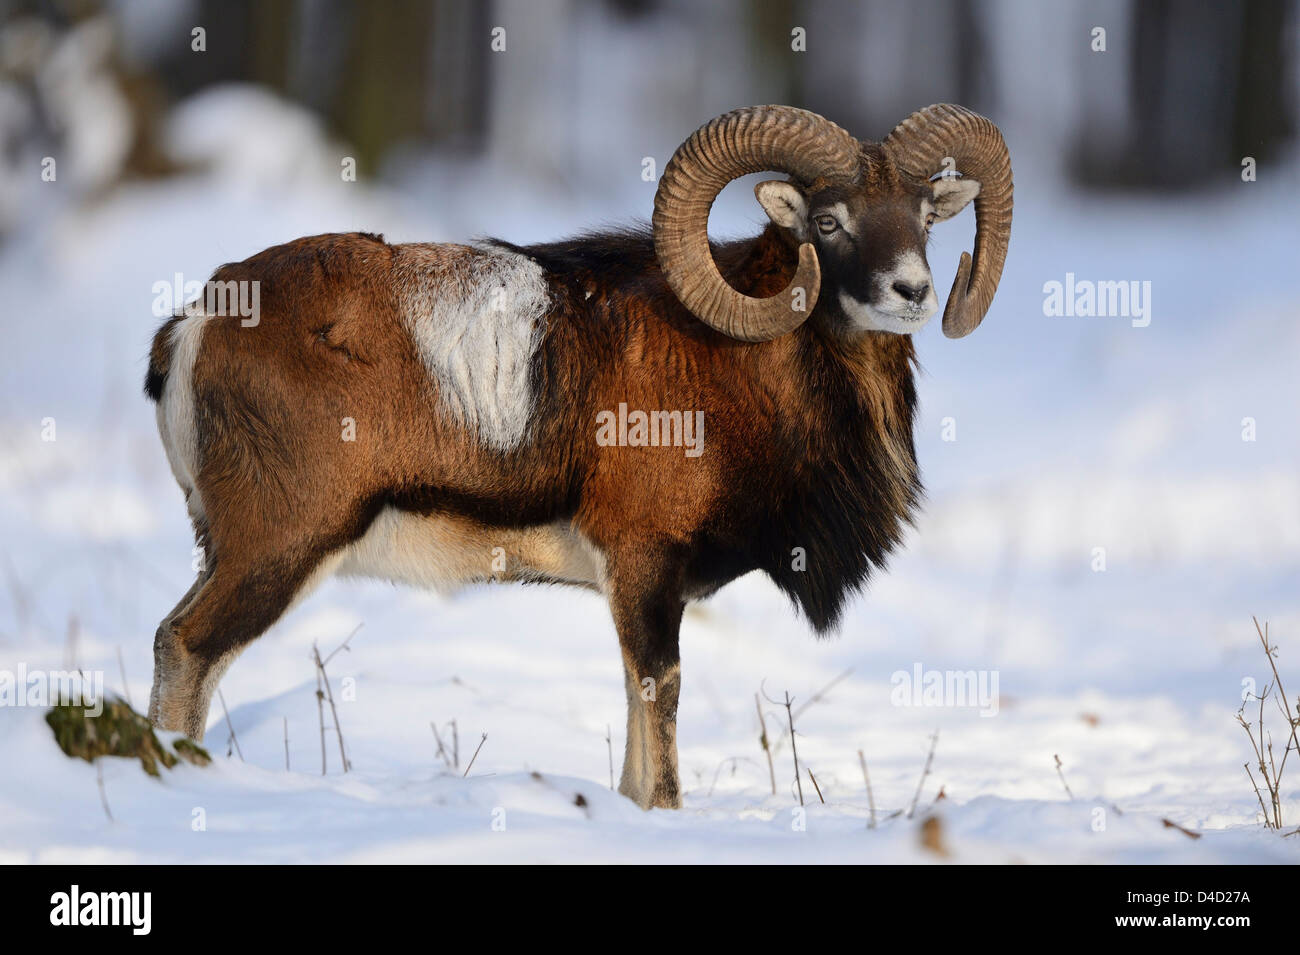 European mouflon, Ovis orientalis musimon, in snow, Bavaria, Germany, Europe Stock Photo